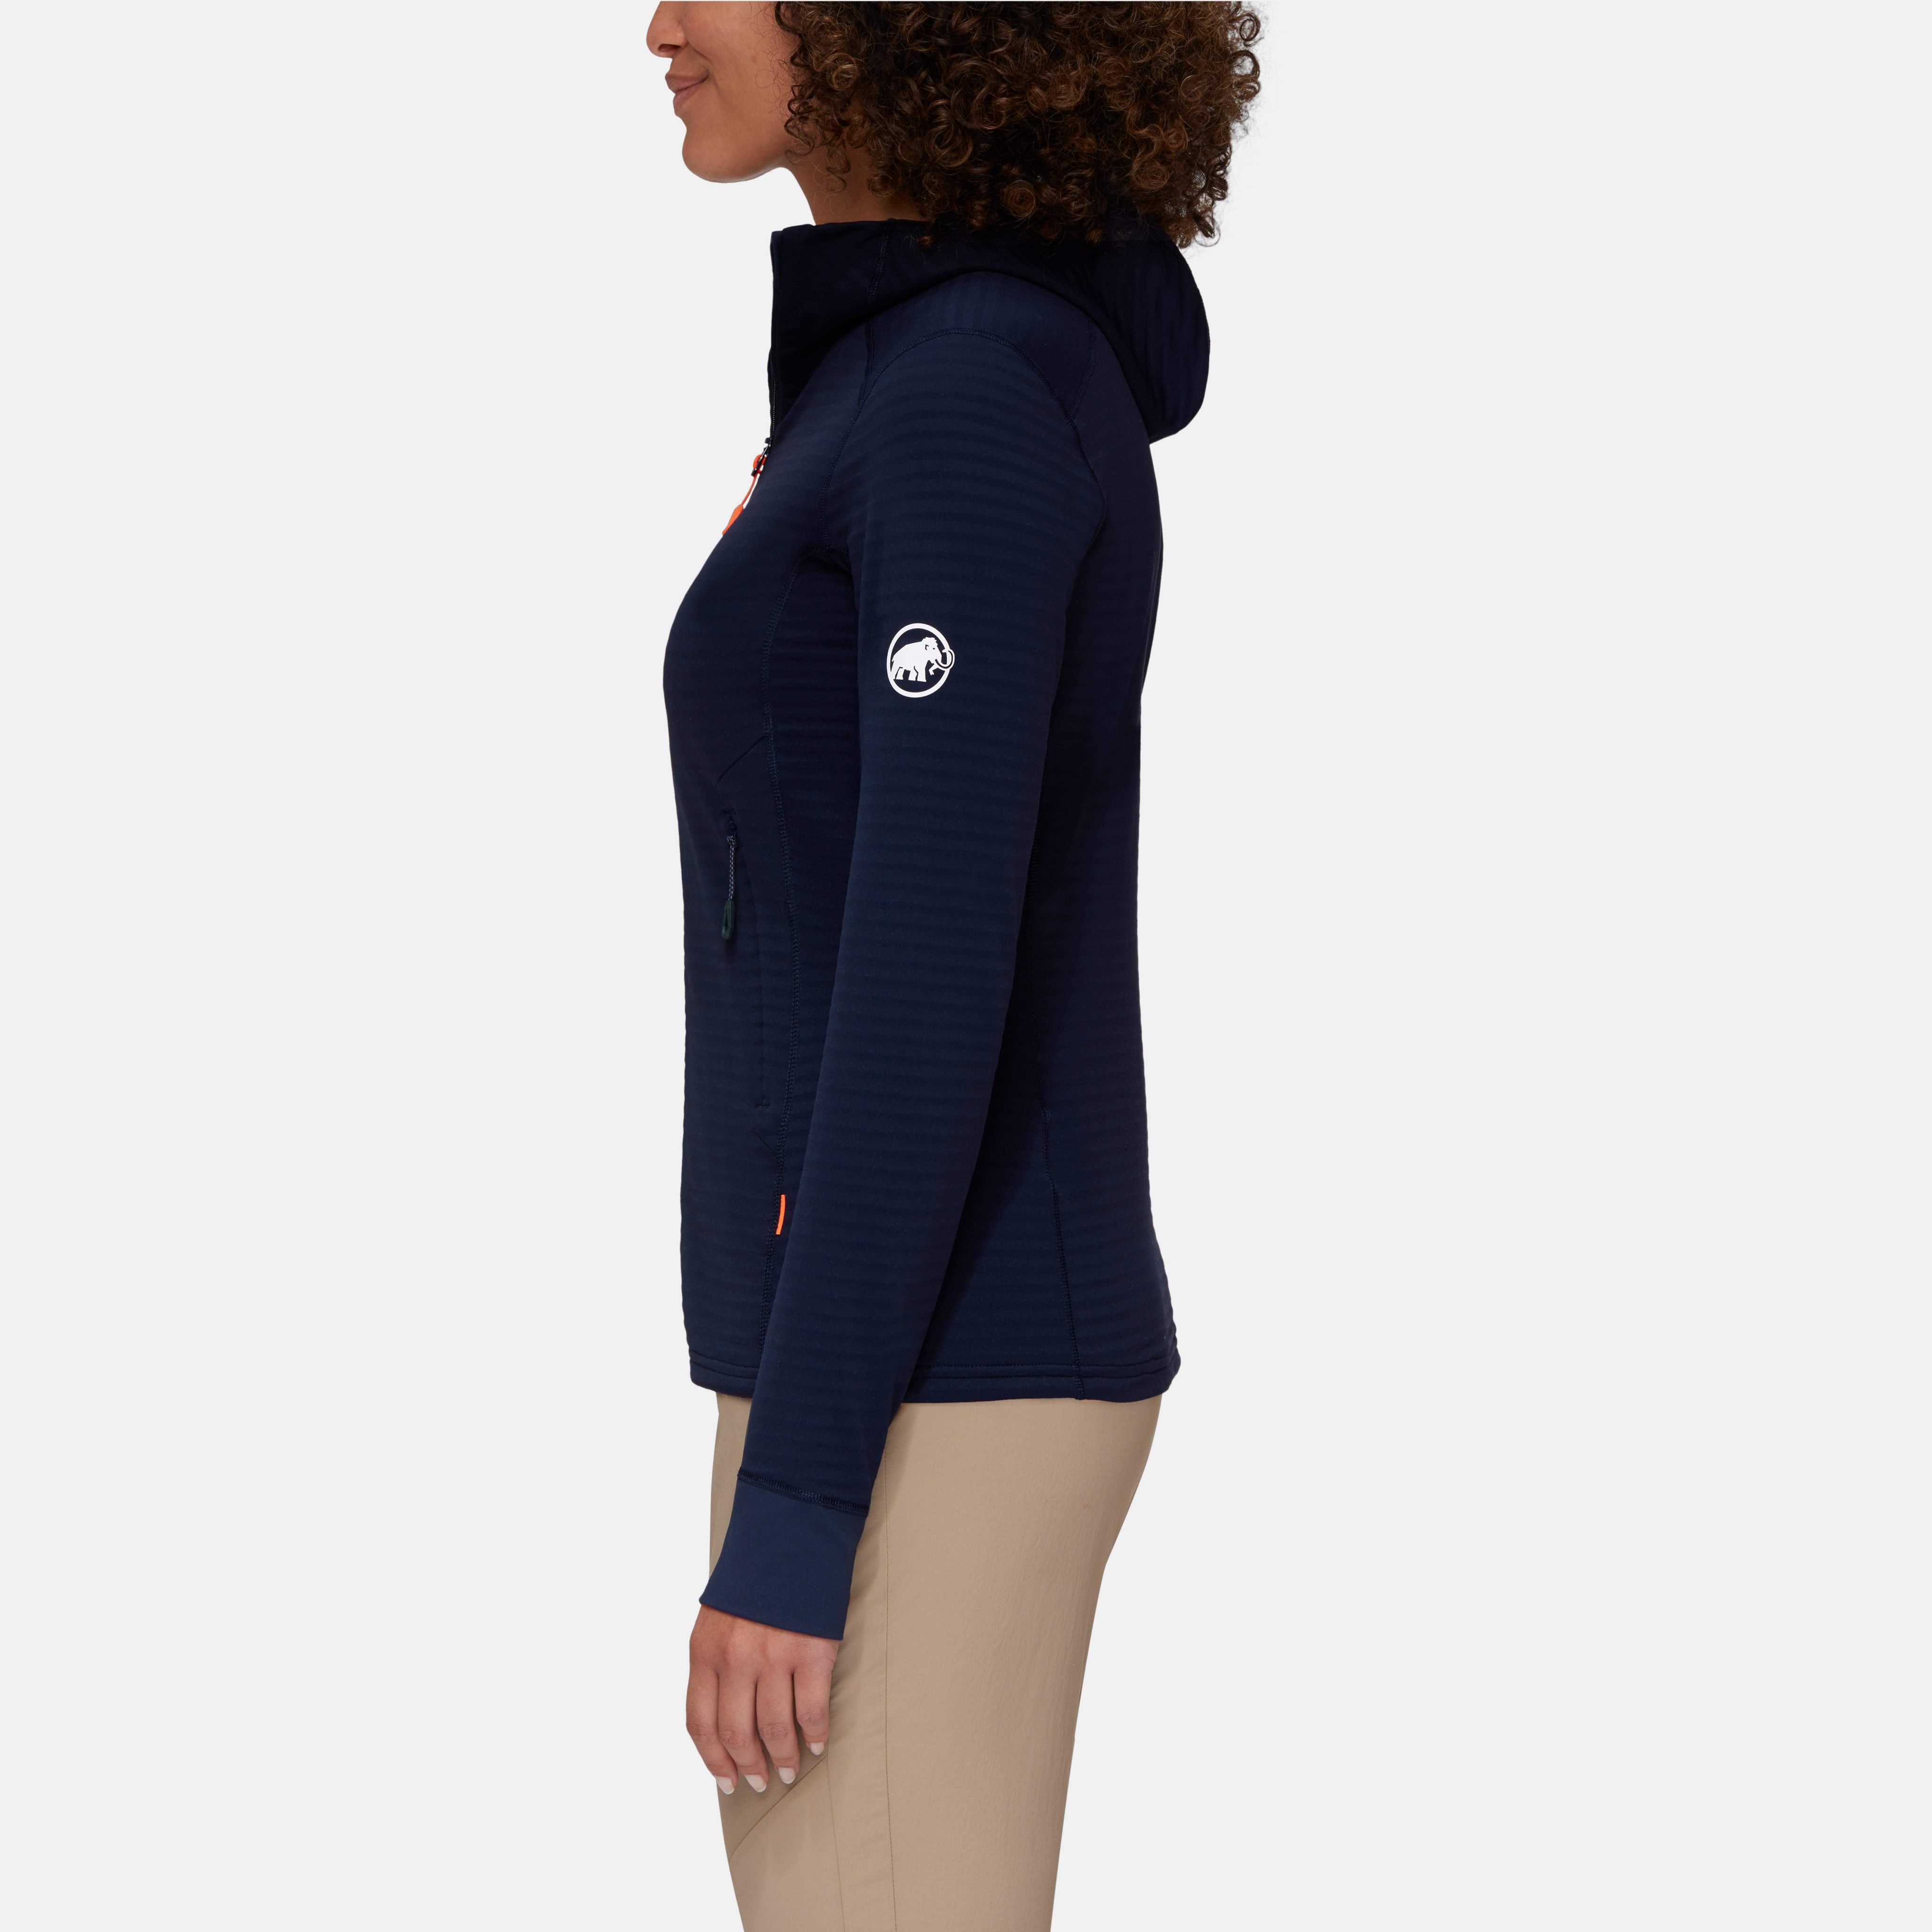 Aconcagua Light ML Hooded Jacket Women product image